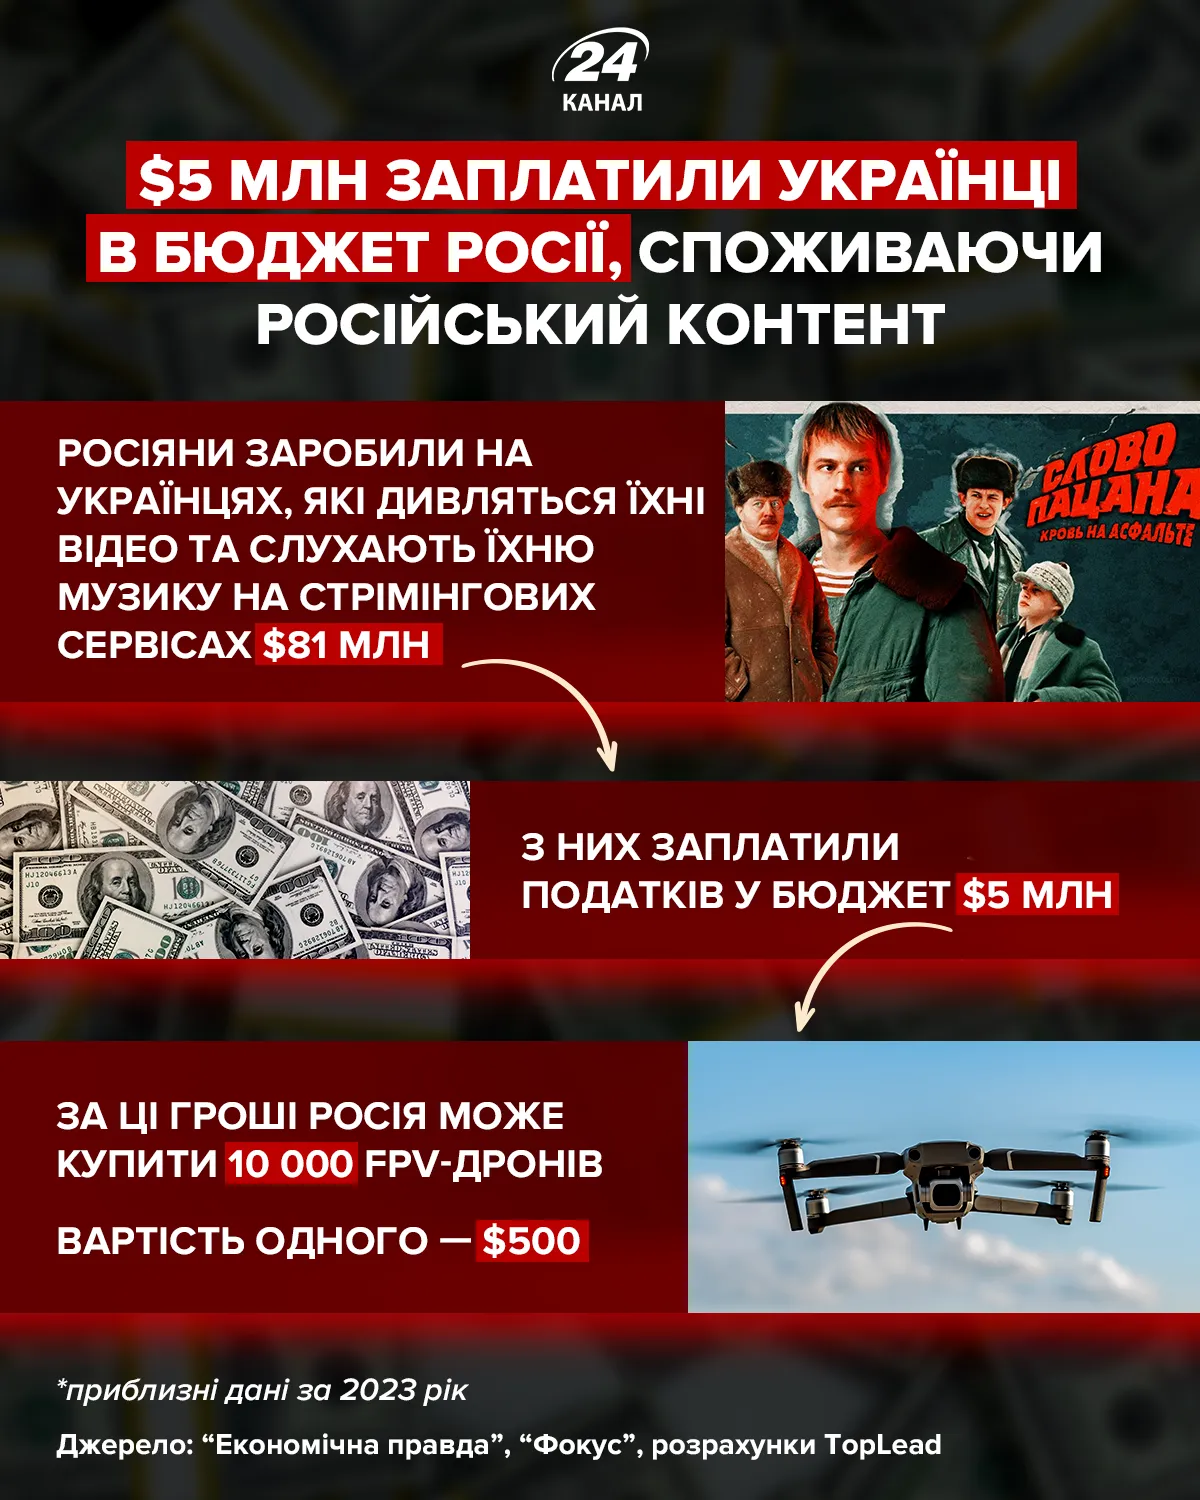 Сколько заплатили украинцы в российский бюджет/ Инфографика: 24 Канал